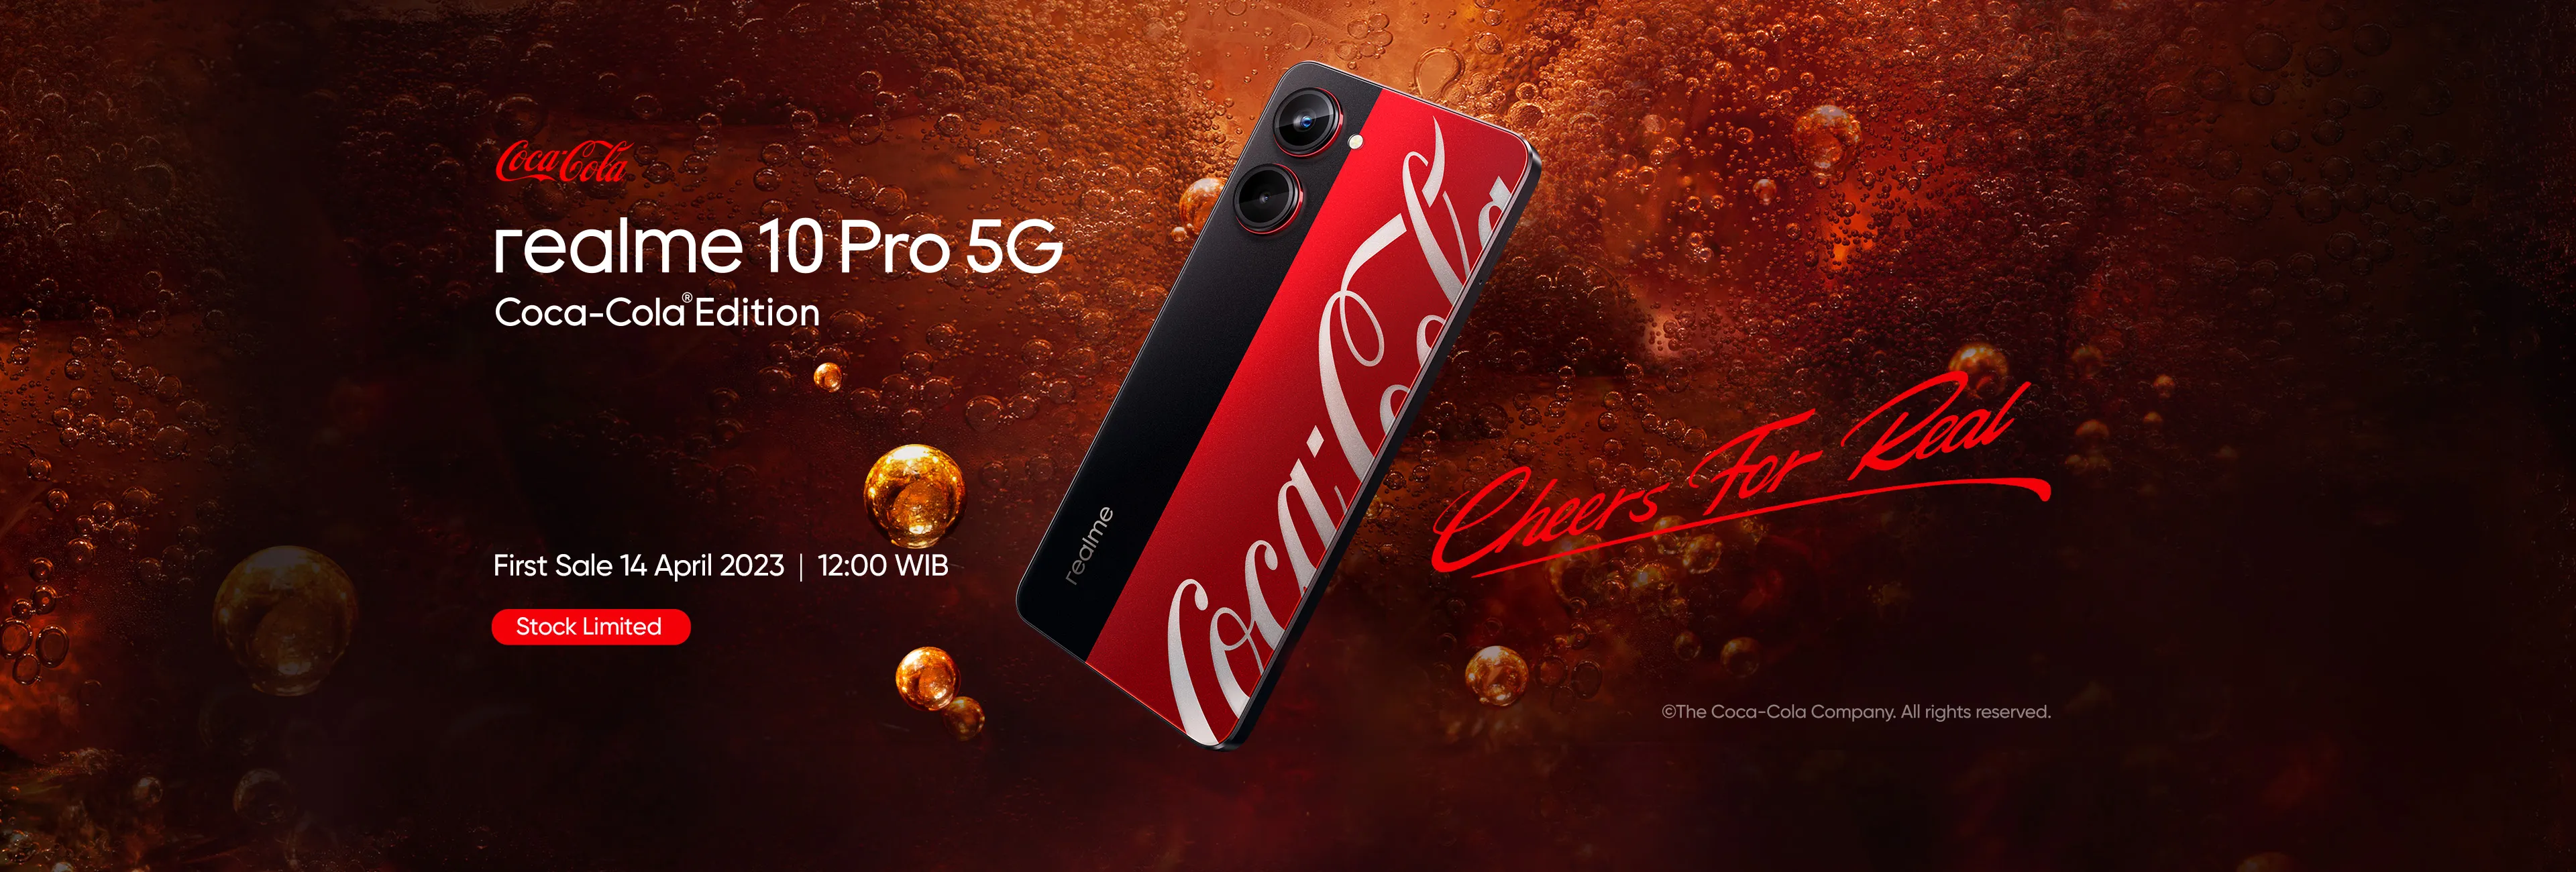 Realme 10 Pro 5G Edisi Coca-Cola Segera Hadir di Indonesia